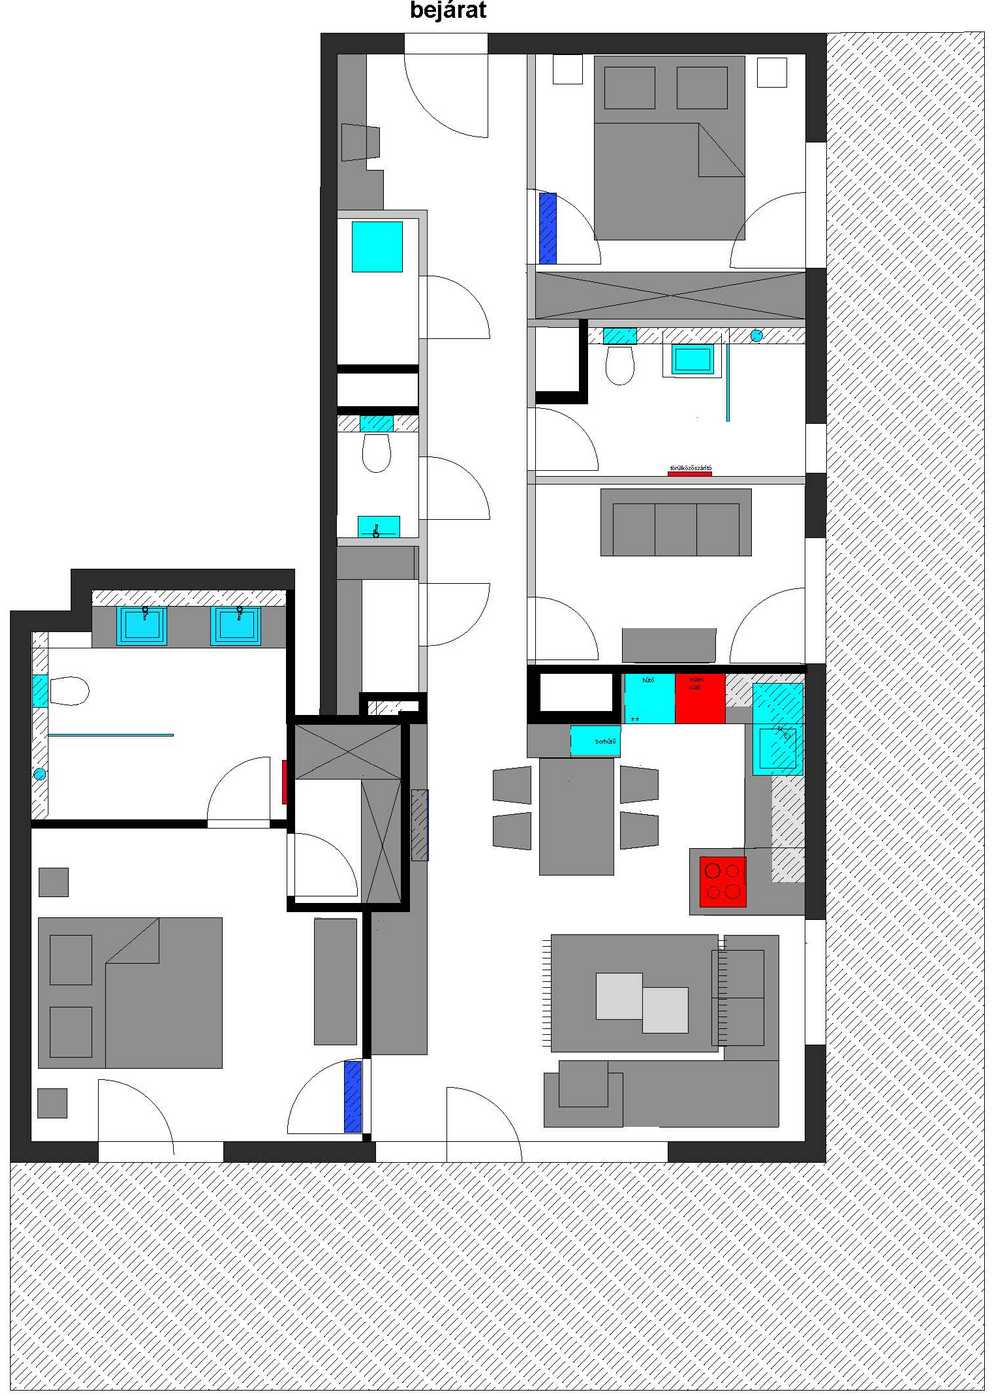 BudaPart lakóparkban berendezett két egyforma lakás, melyek csak a színekben térnek el egymástól